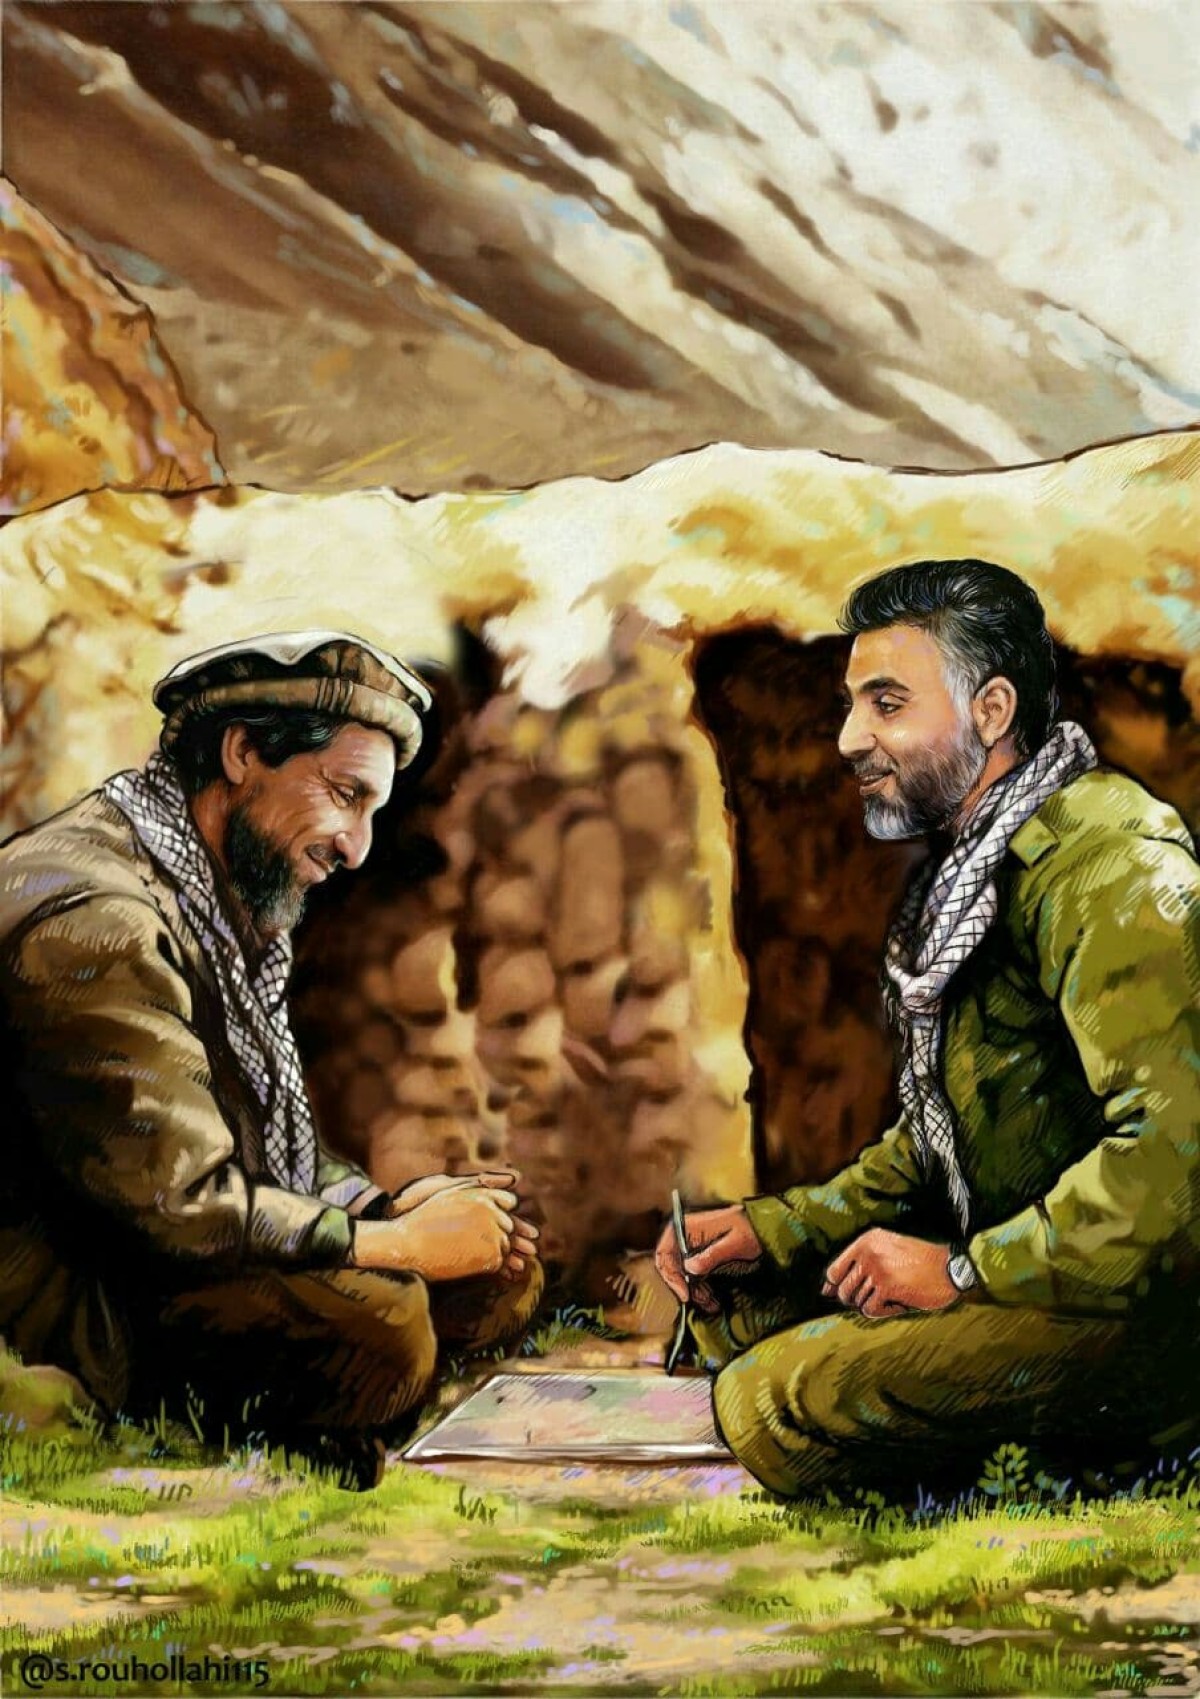  ” دور الجنرال شهيد سليماني والوضع الحالي في أفغانستان “